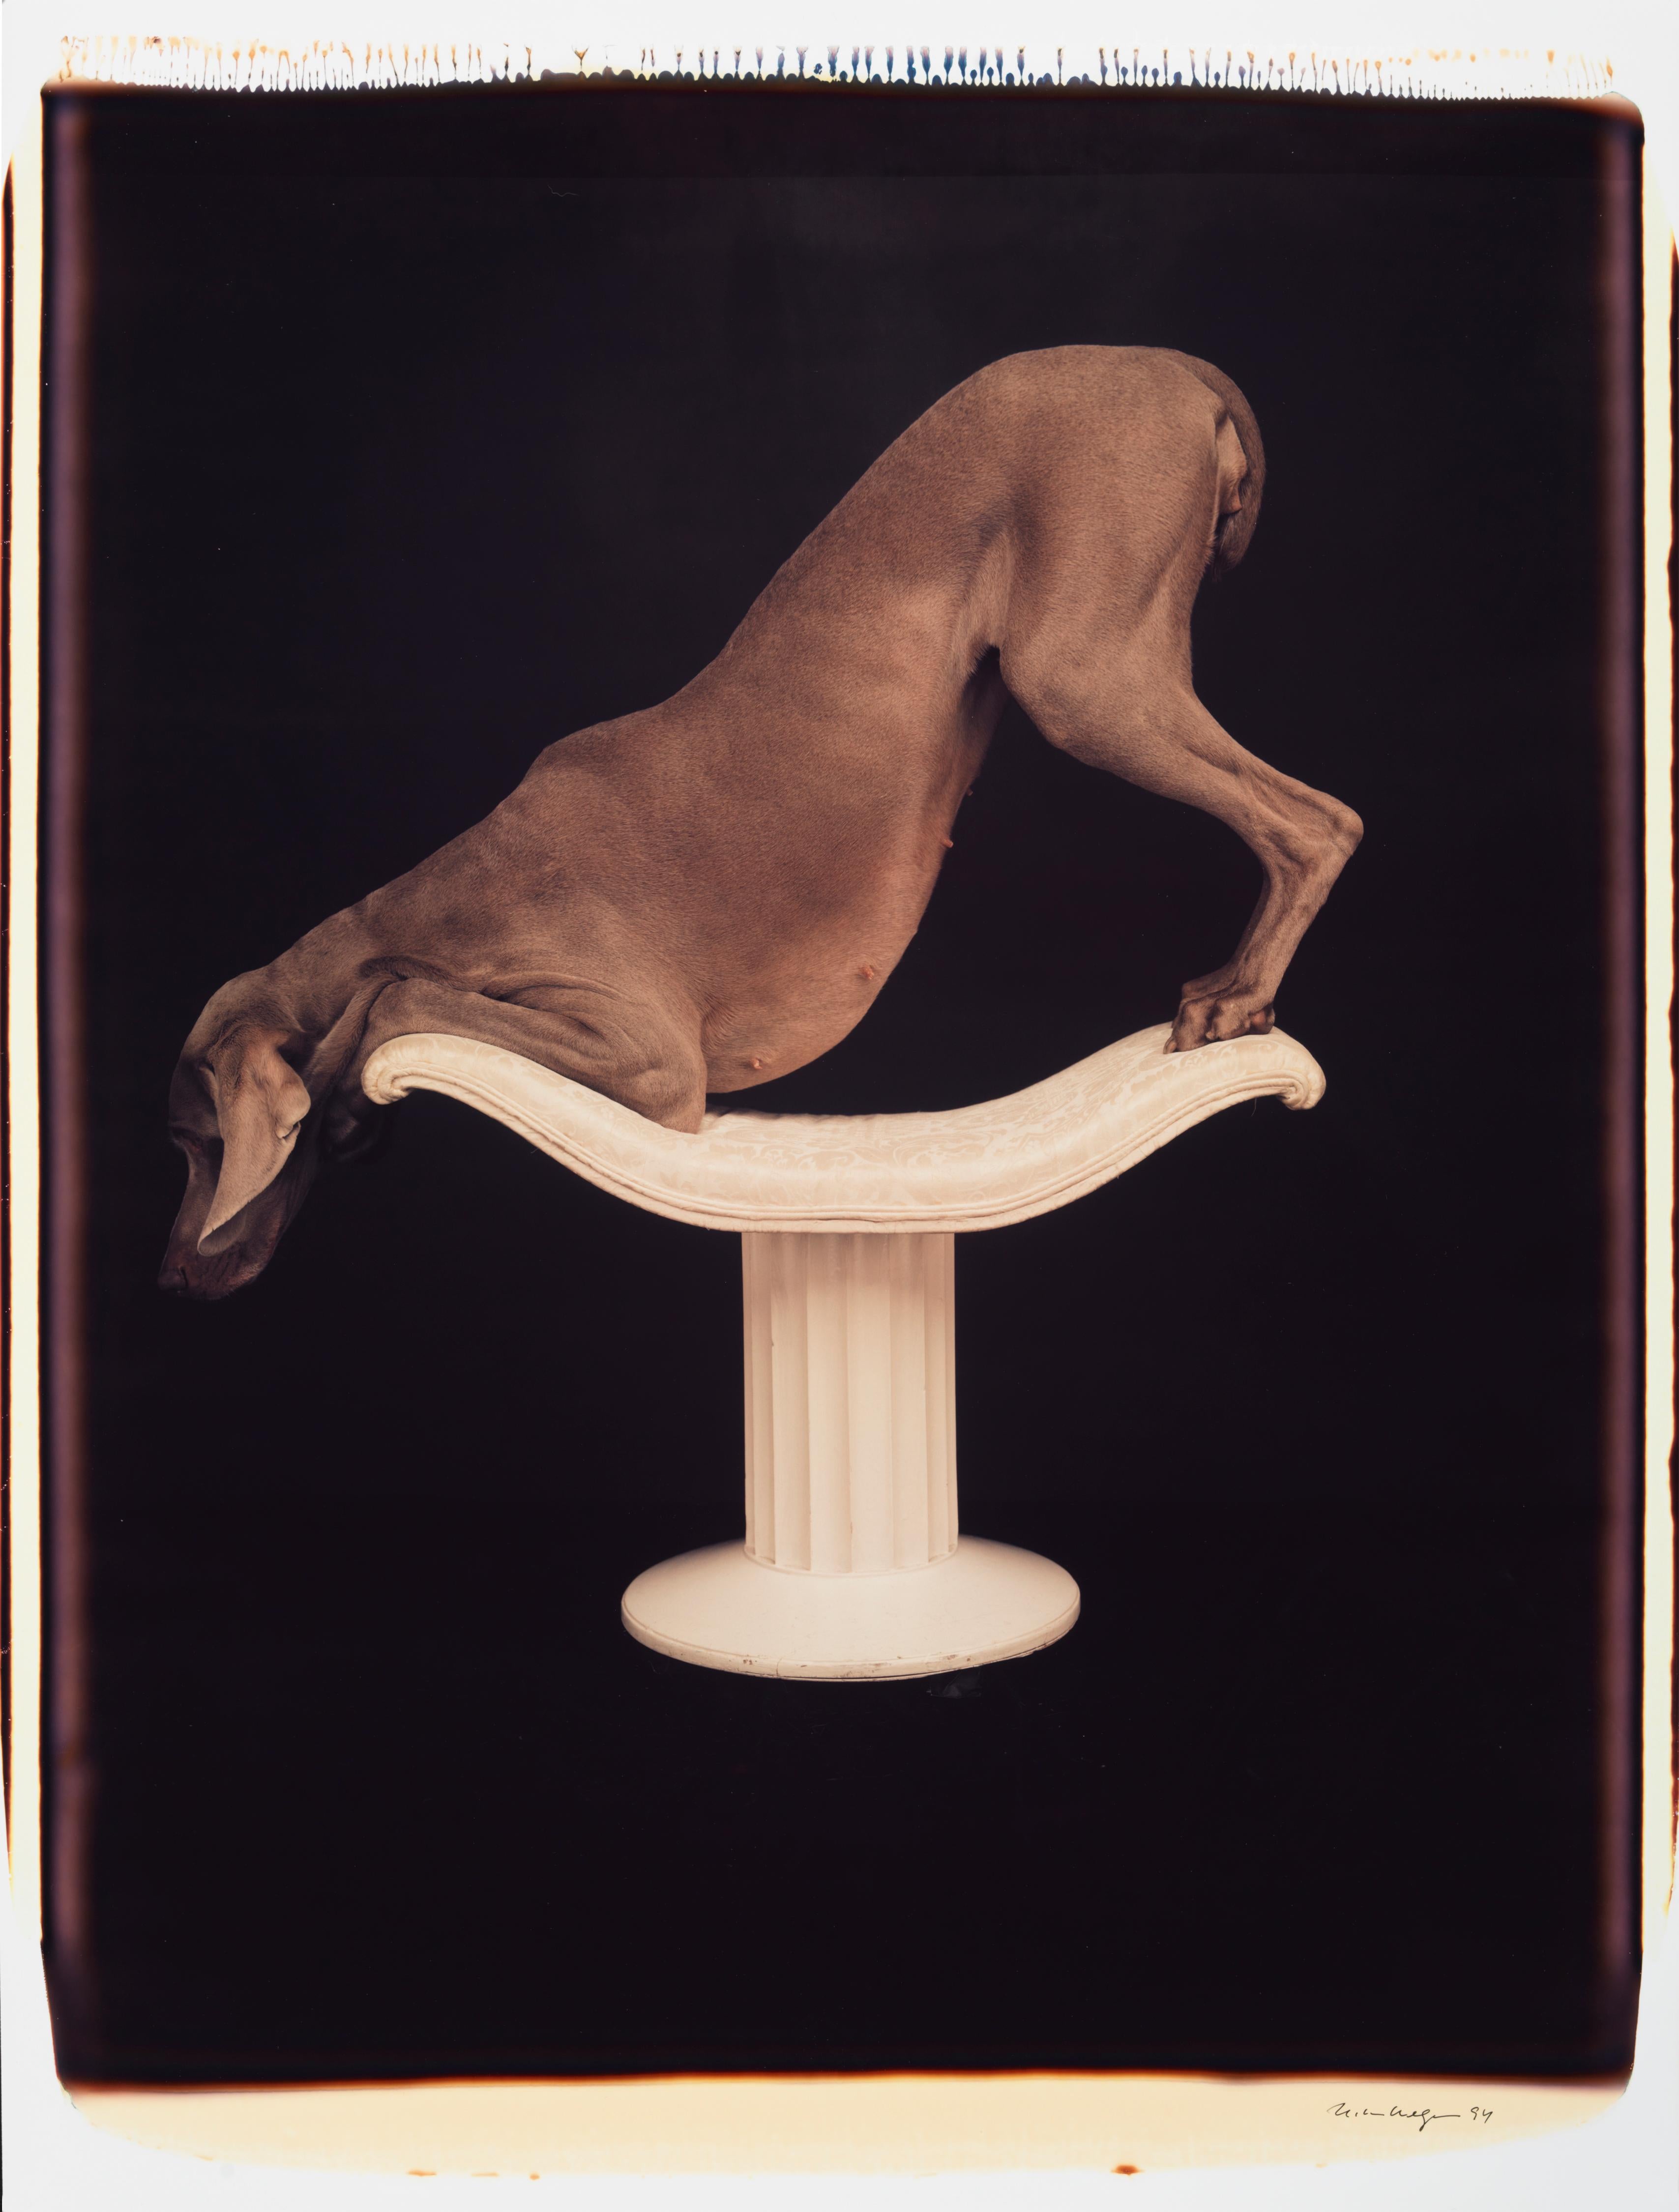 Posed on Pedestal - William Wegman (Farbfotografie)
Signiert und beschriftet mit Titel
Einzigartiger Farb-Polaroiddruck, gedruckt 1994
24 x 20 Zoll

Die Hunde, die mit Perücken, Kostümen und Requisiten ausgestattet sind, zeigen eine breite Palette